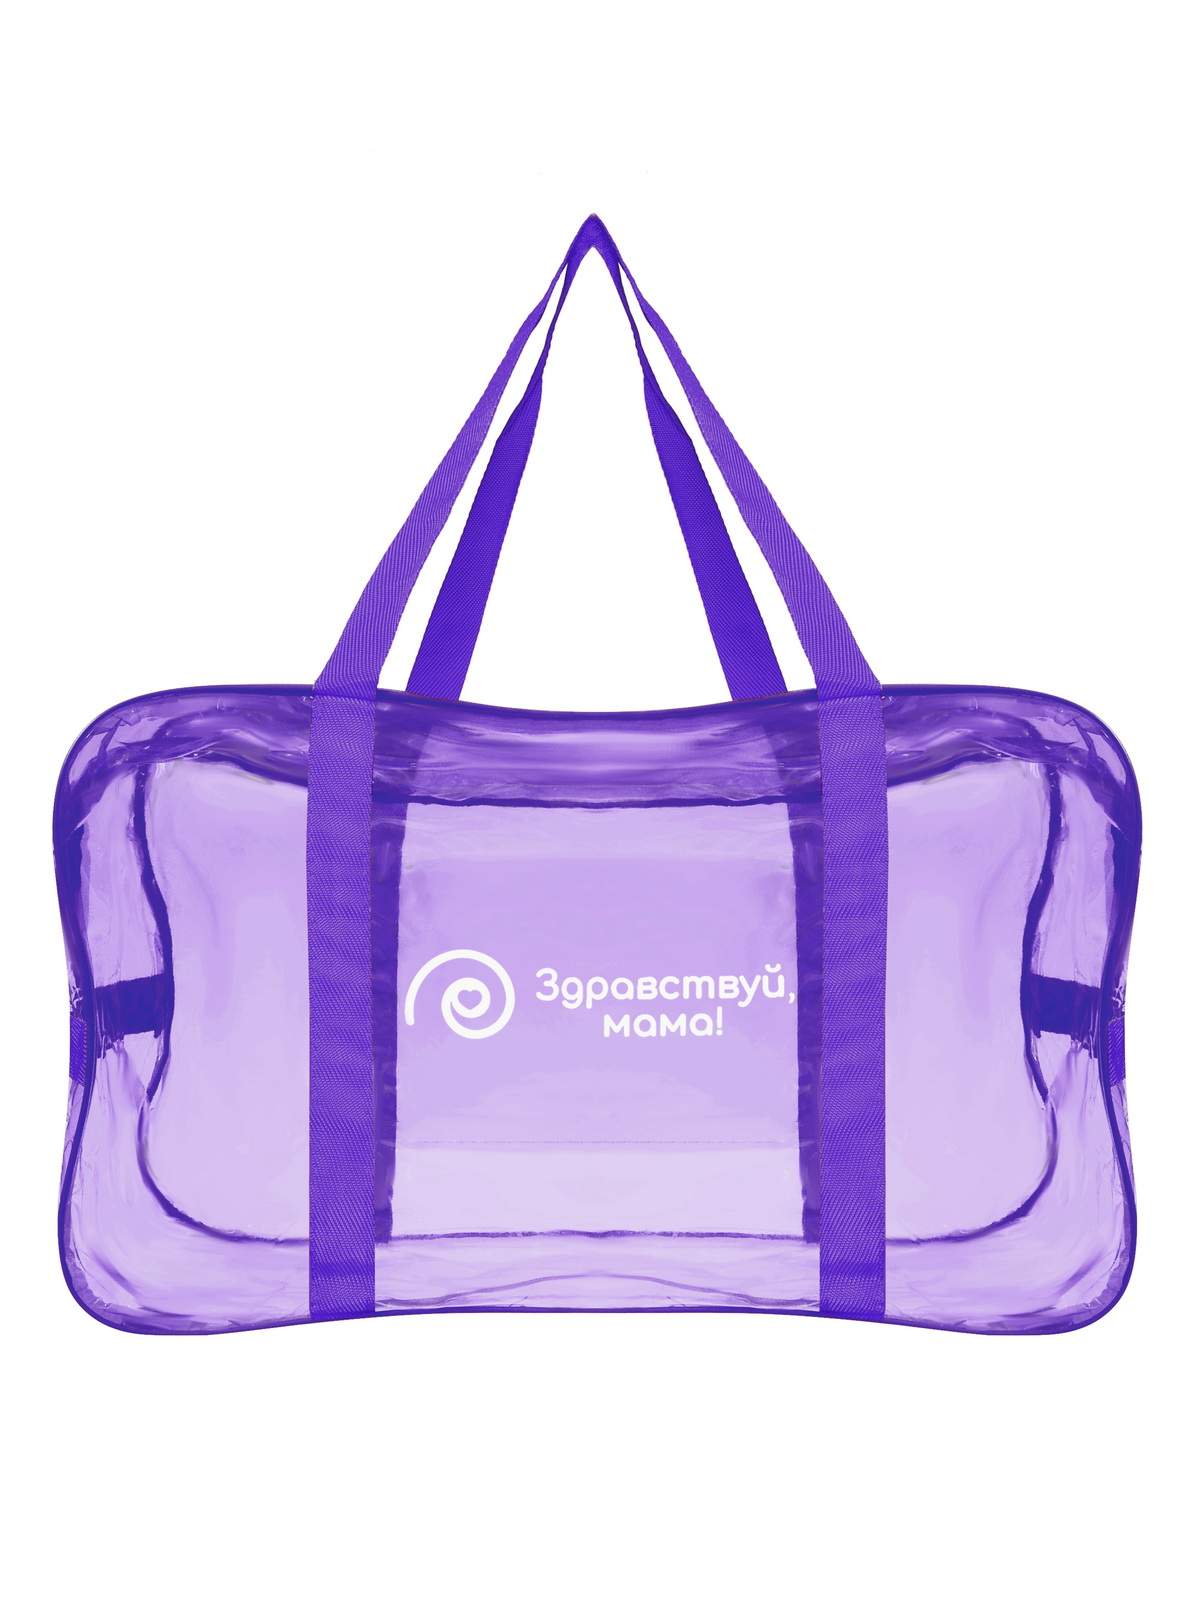 Купить сумка в роддом Здравствуй, мама! 1 шт. фиолетовый, цены на Мегамаркет | Артикул: 600011451749